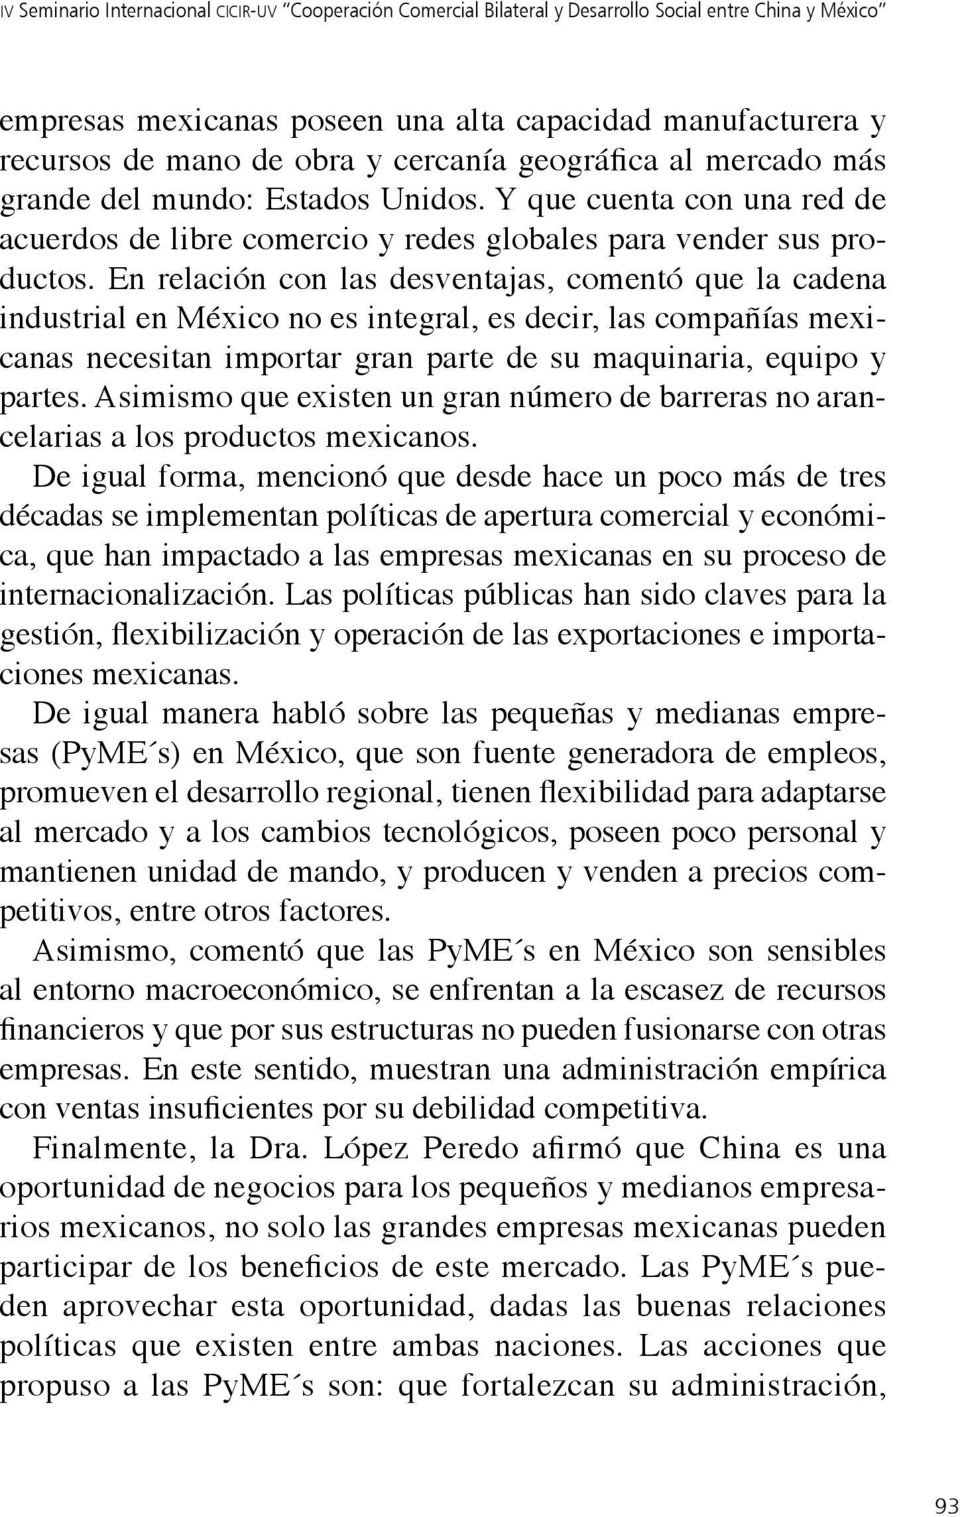 En relación con las desventajas, comentó que la cadena industrial en México no es integral, es decir, las compañías mexicanas necesitan importar gran parte de su maquinaria, equipo y partes.